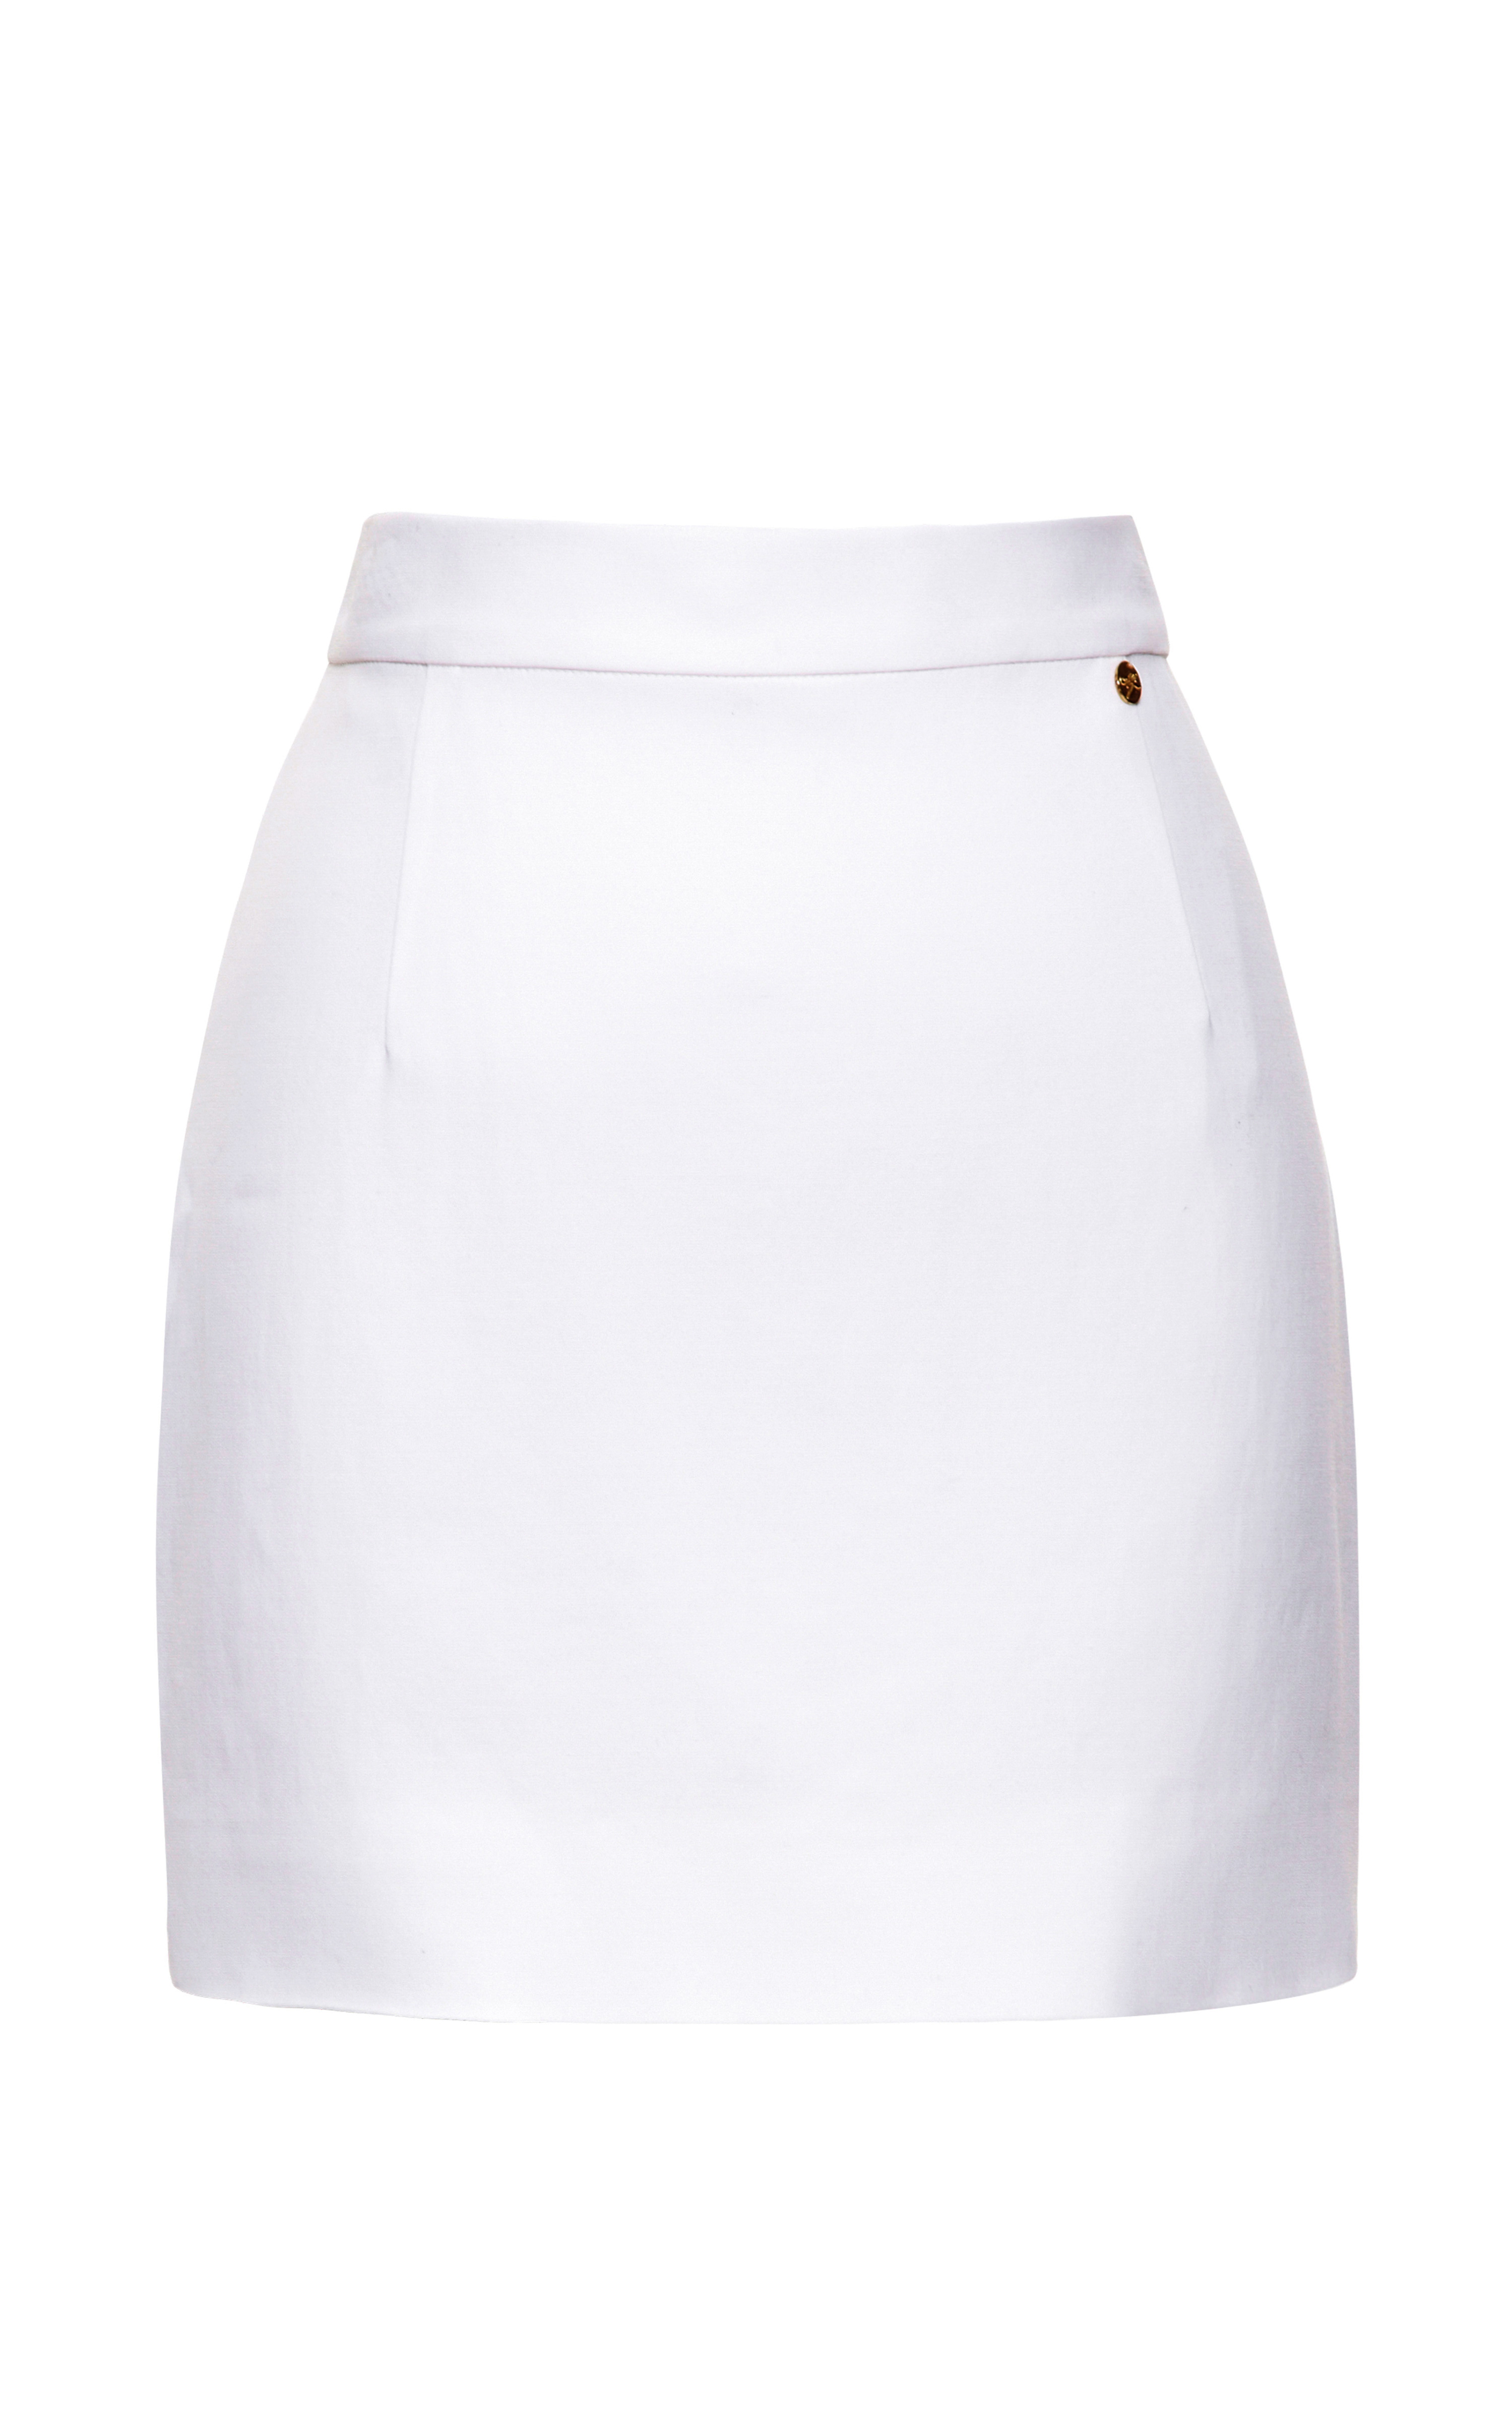 Alexander terekhov White Mini Skirt in White | Lyst